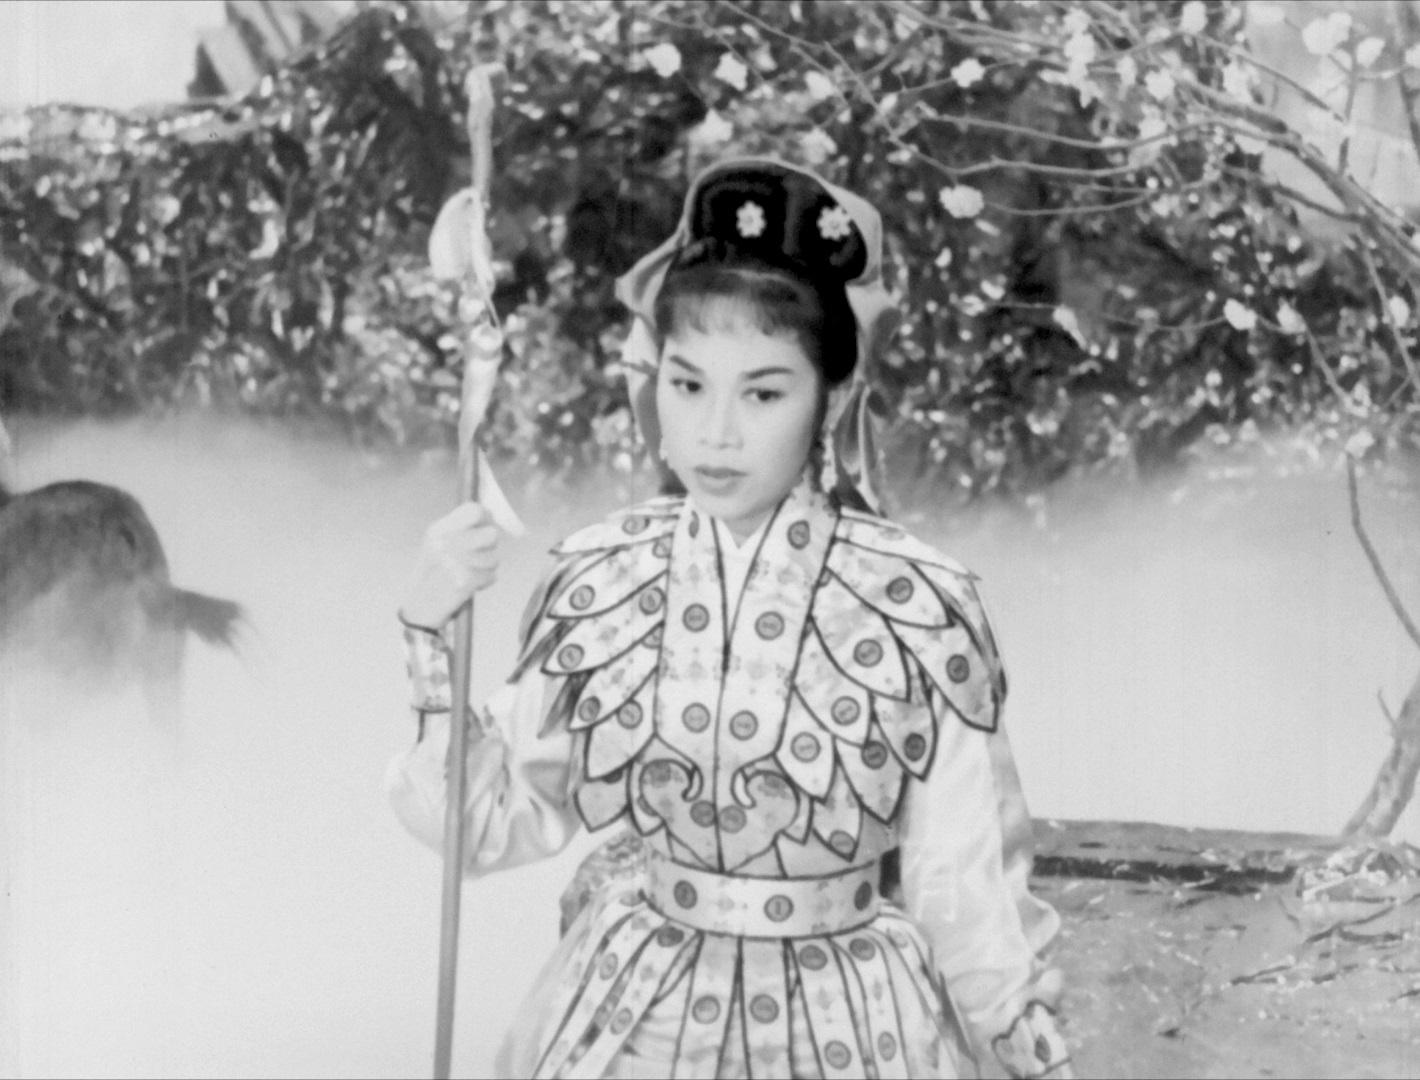 康樂及文化事務署香港電影資料館由七月至十二月，逢星期五上午十一時的「影畫早晨」節目，將精選放映18齣芳艷芬經典作品，讓戲迷重溫這位「花旦王」精湛演技。圖示《仙女牧羊》（1958）劇照。
